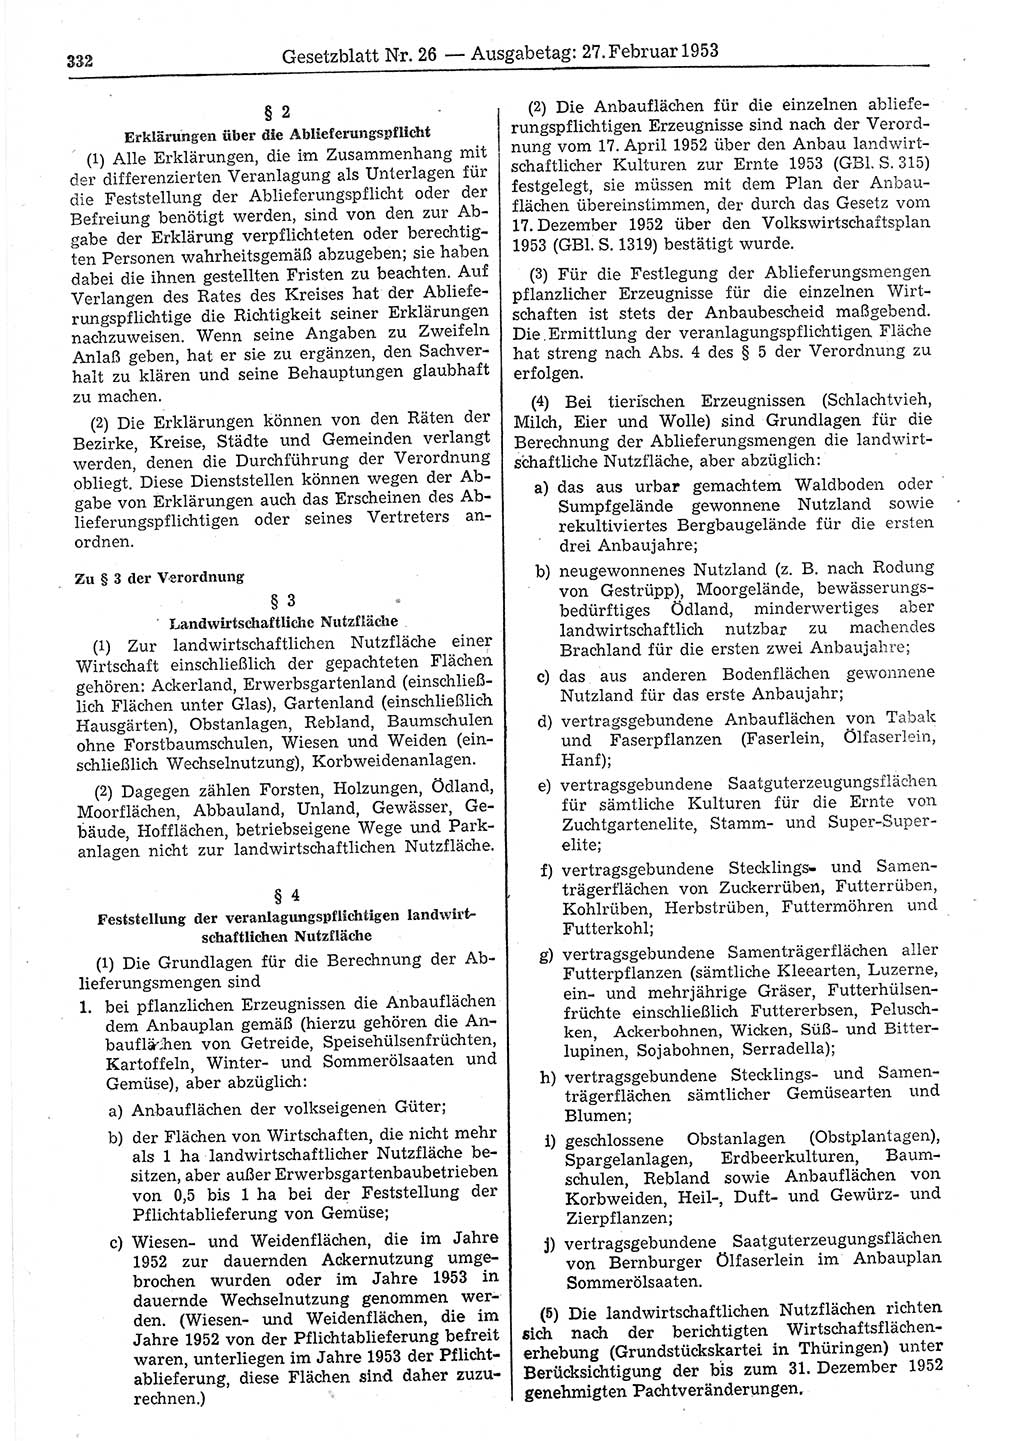 Gesetzblatt (GBl.) der Deutschen Demokratischen Republik (DDR) 1953, Seite 332 (GBl. DDR 1953, S. 332)